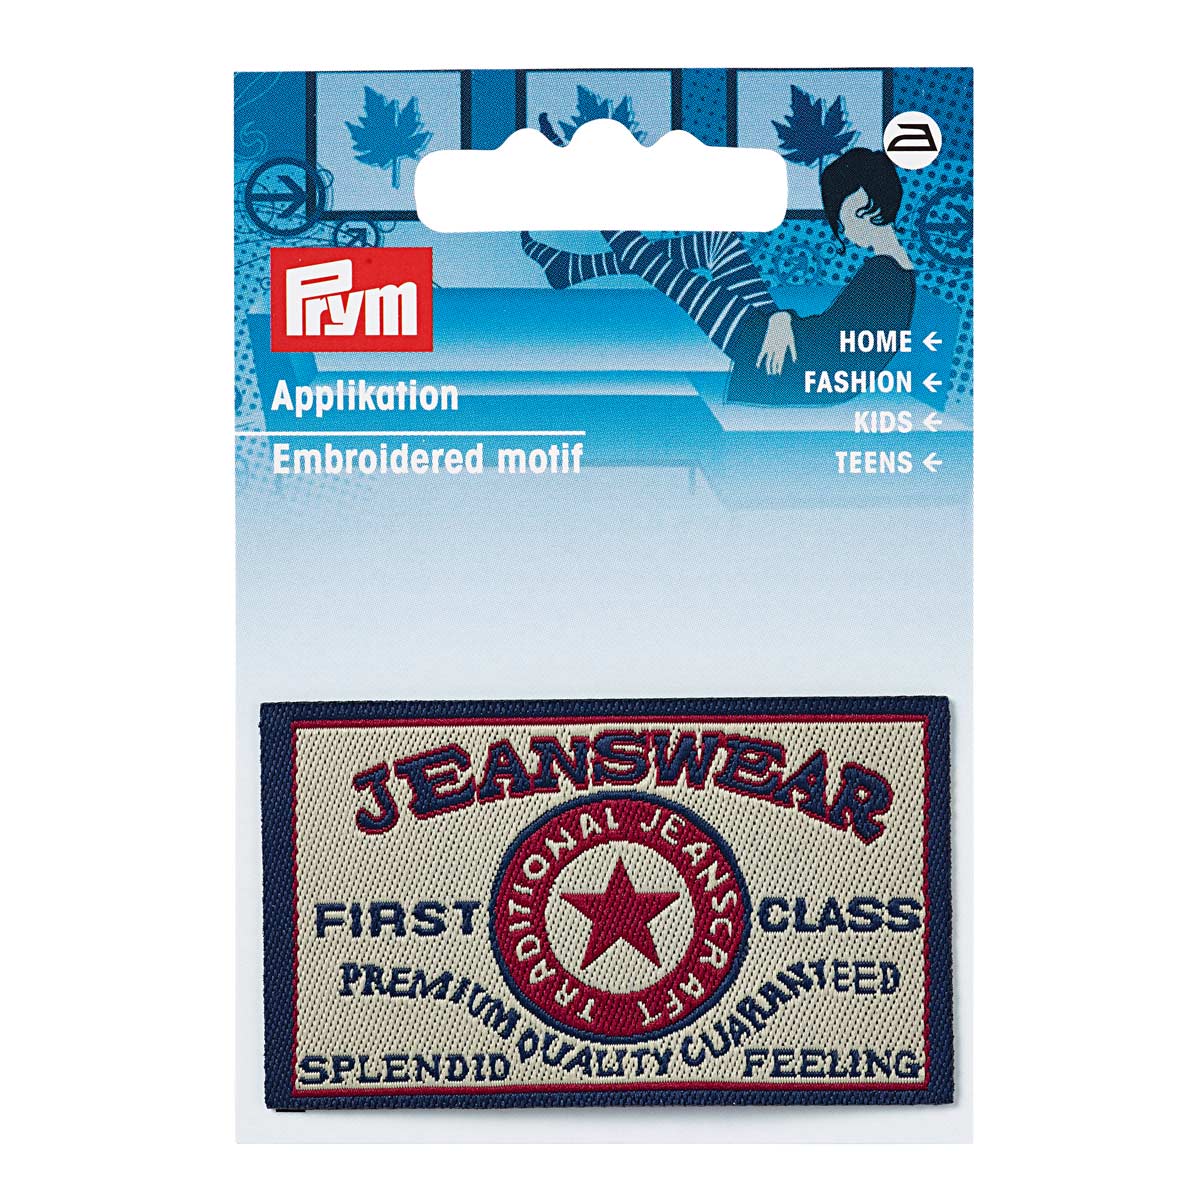 Термоаппликация Prym 925677 First Class Jeanswear прямоугольный джинсовый ярлык